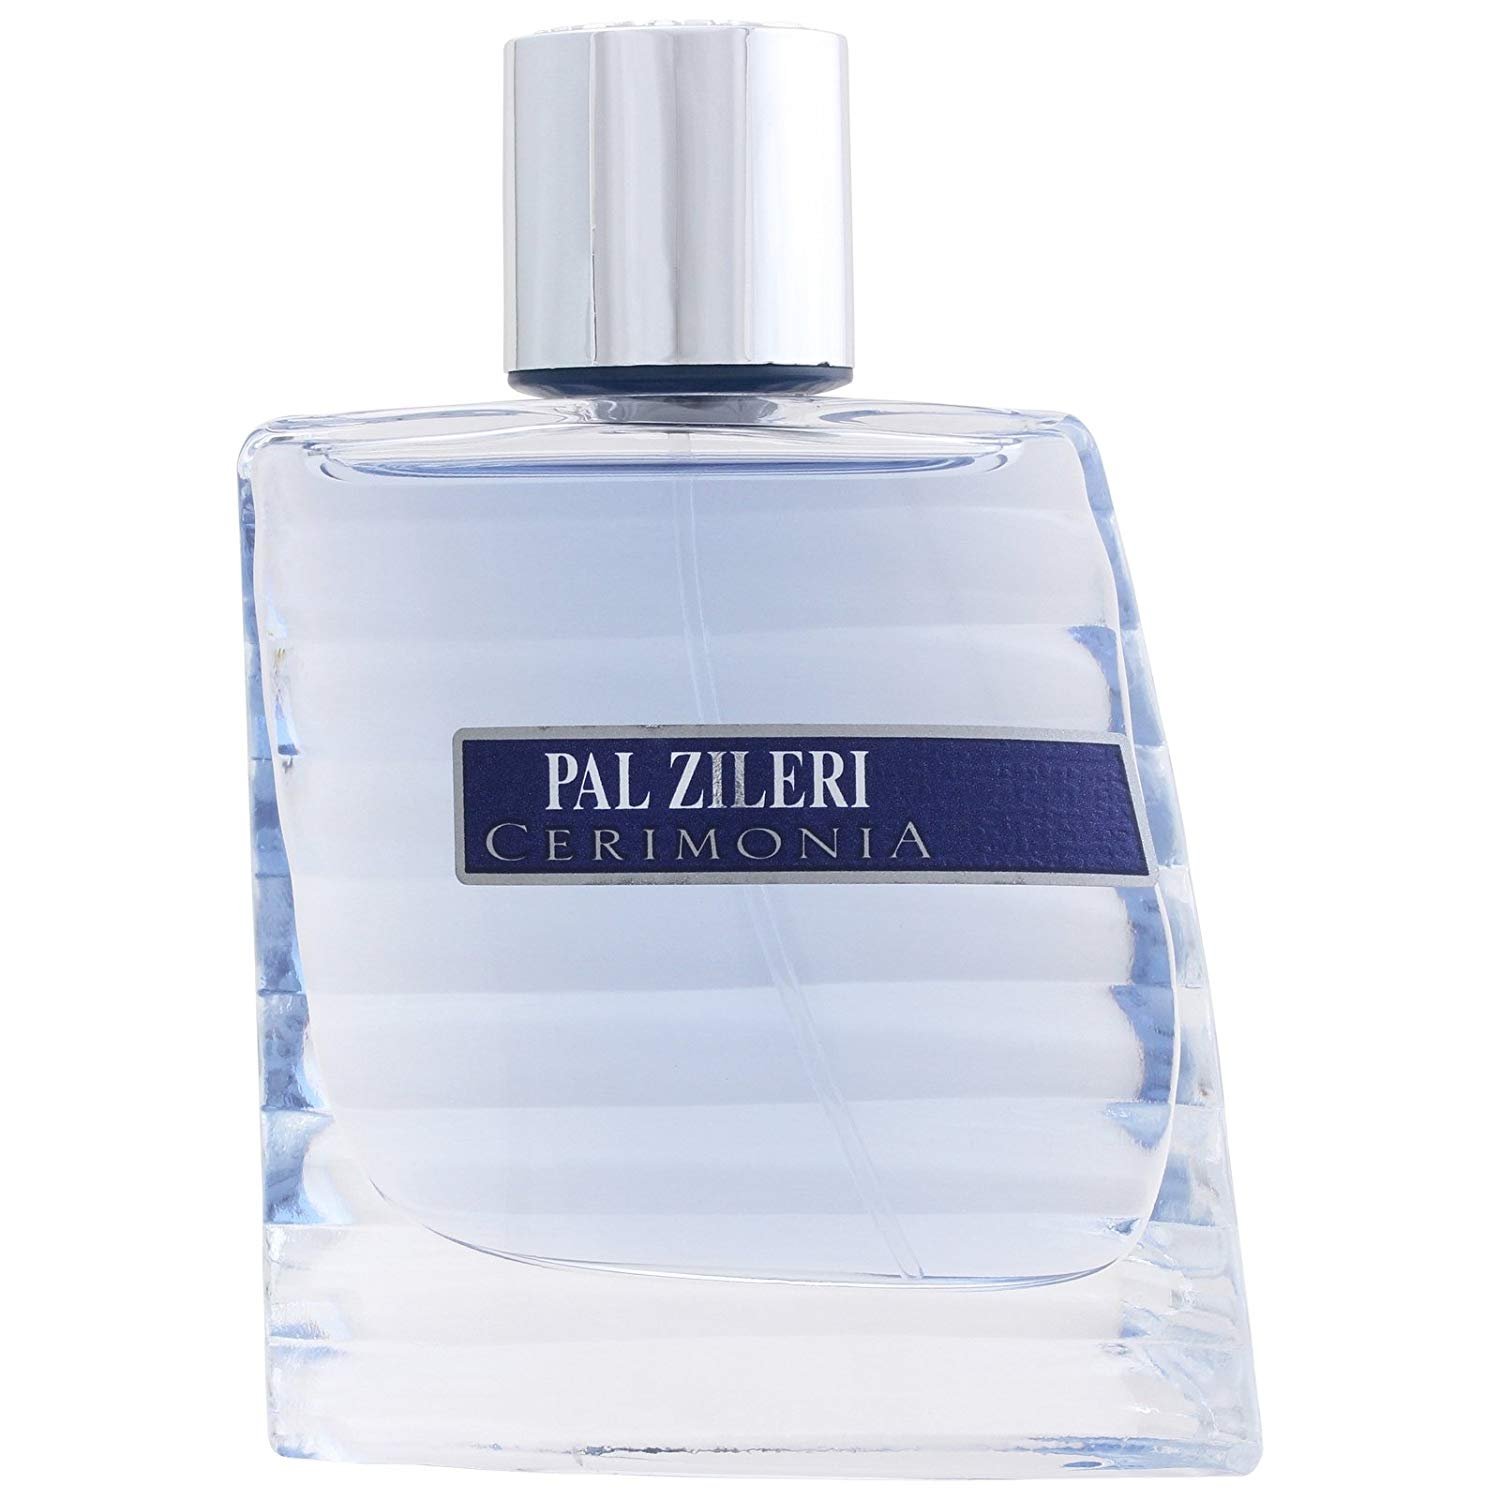 Planet Perfume - Pal Zileri Cerimonia Pour Homme : Super Deals